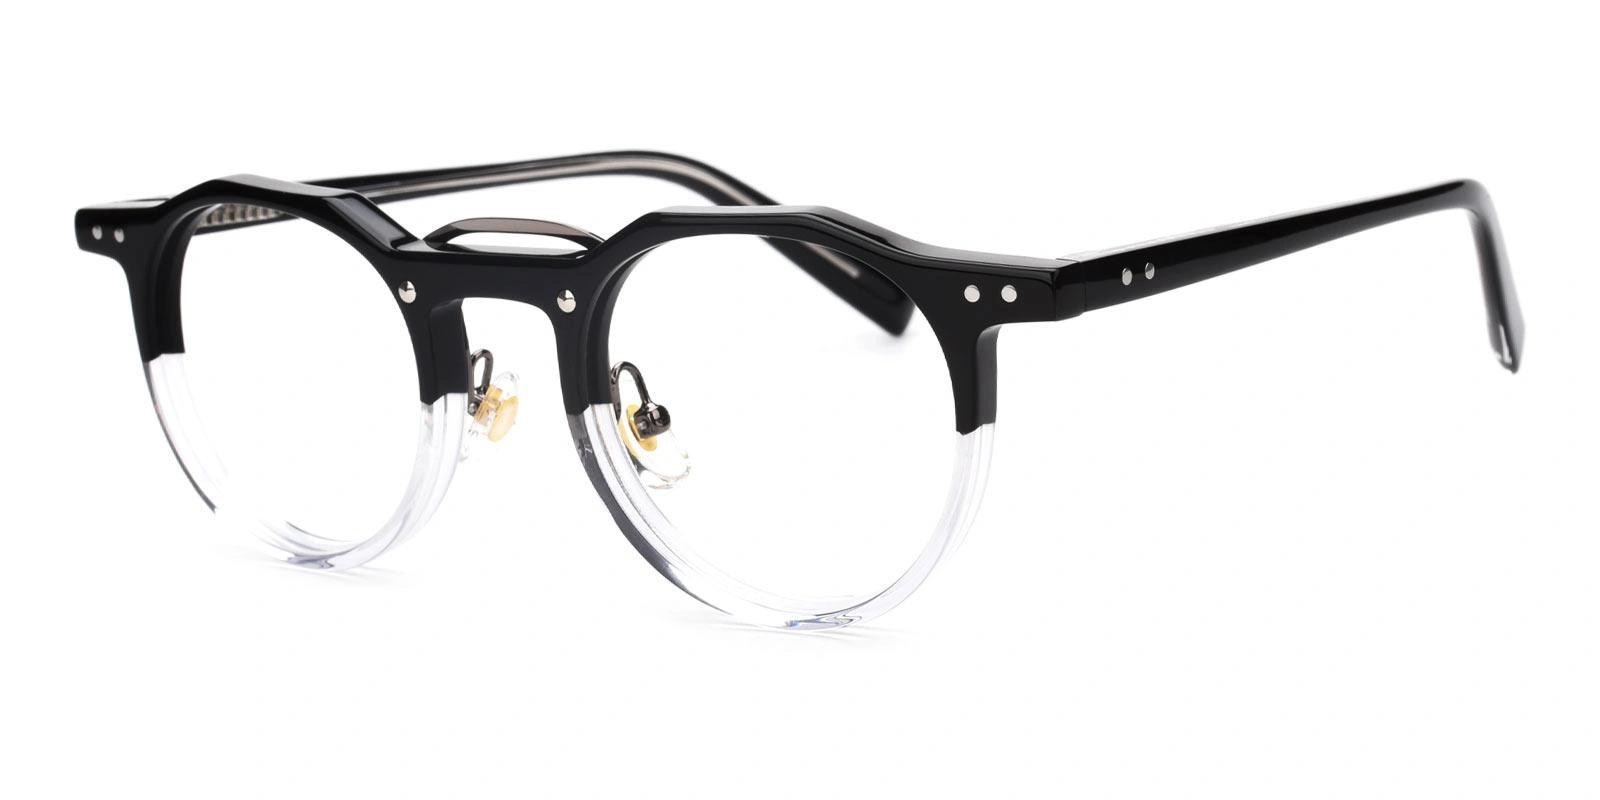 Famivity Black Acetate Eyeglasses , NosePads Frames from ABBE Glasses